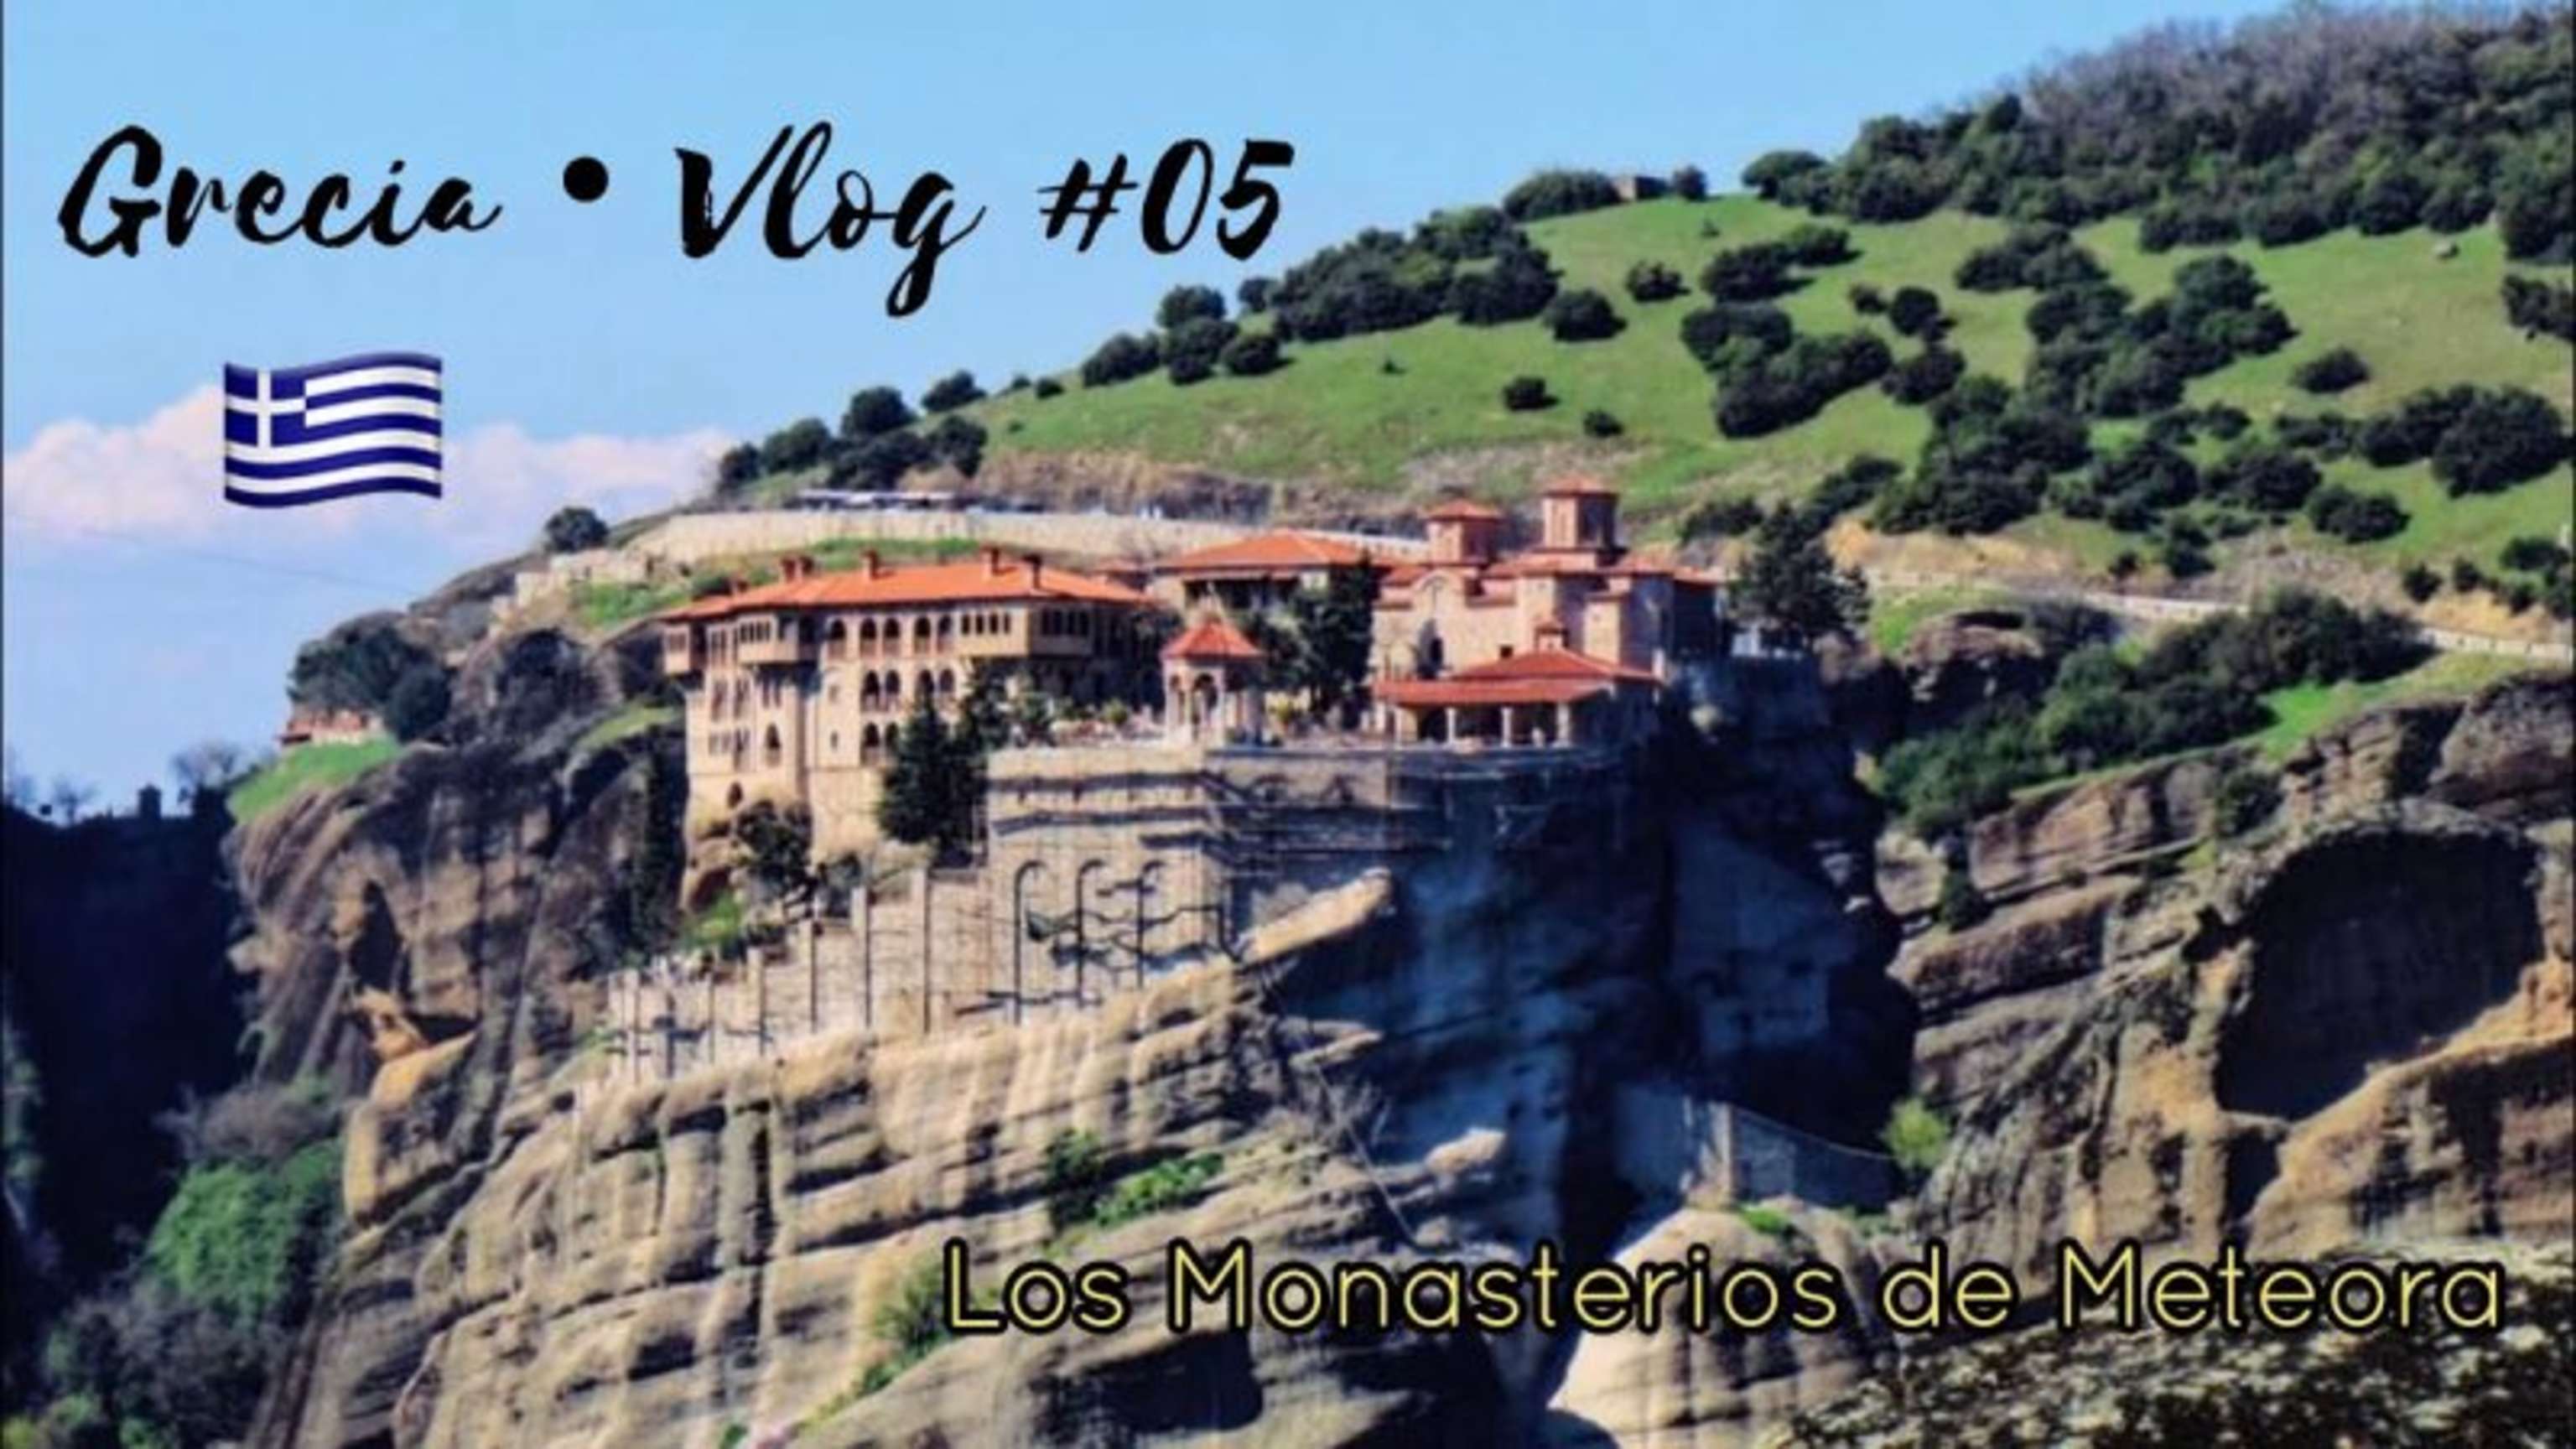 Visitamos Monasterios QUE FLOTAN EN EL AIRE?! | GRECIA VLOGS #05